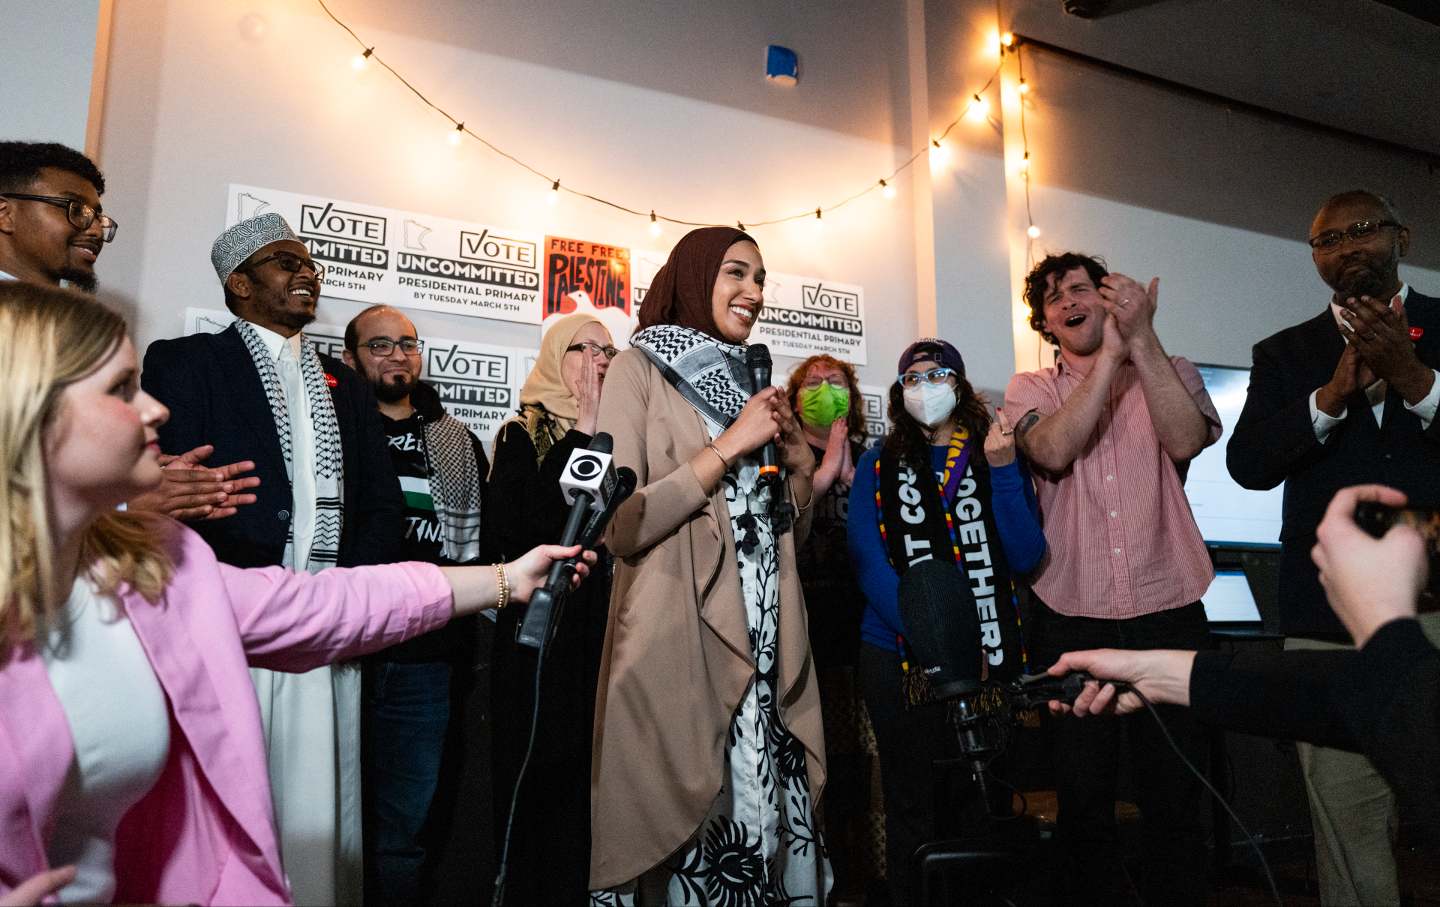 Asma Mohammed (Mitte), eine Aktivistin von Uncommitted Minnesota, spricht während einer Wachparty während der Präsidentschaftsvorwahlen in Minneapolis, Minnesota, am Super Tuesday, dem 5. März 2024, zu den Medien.